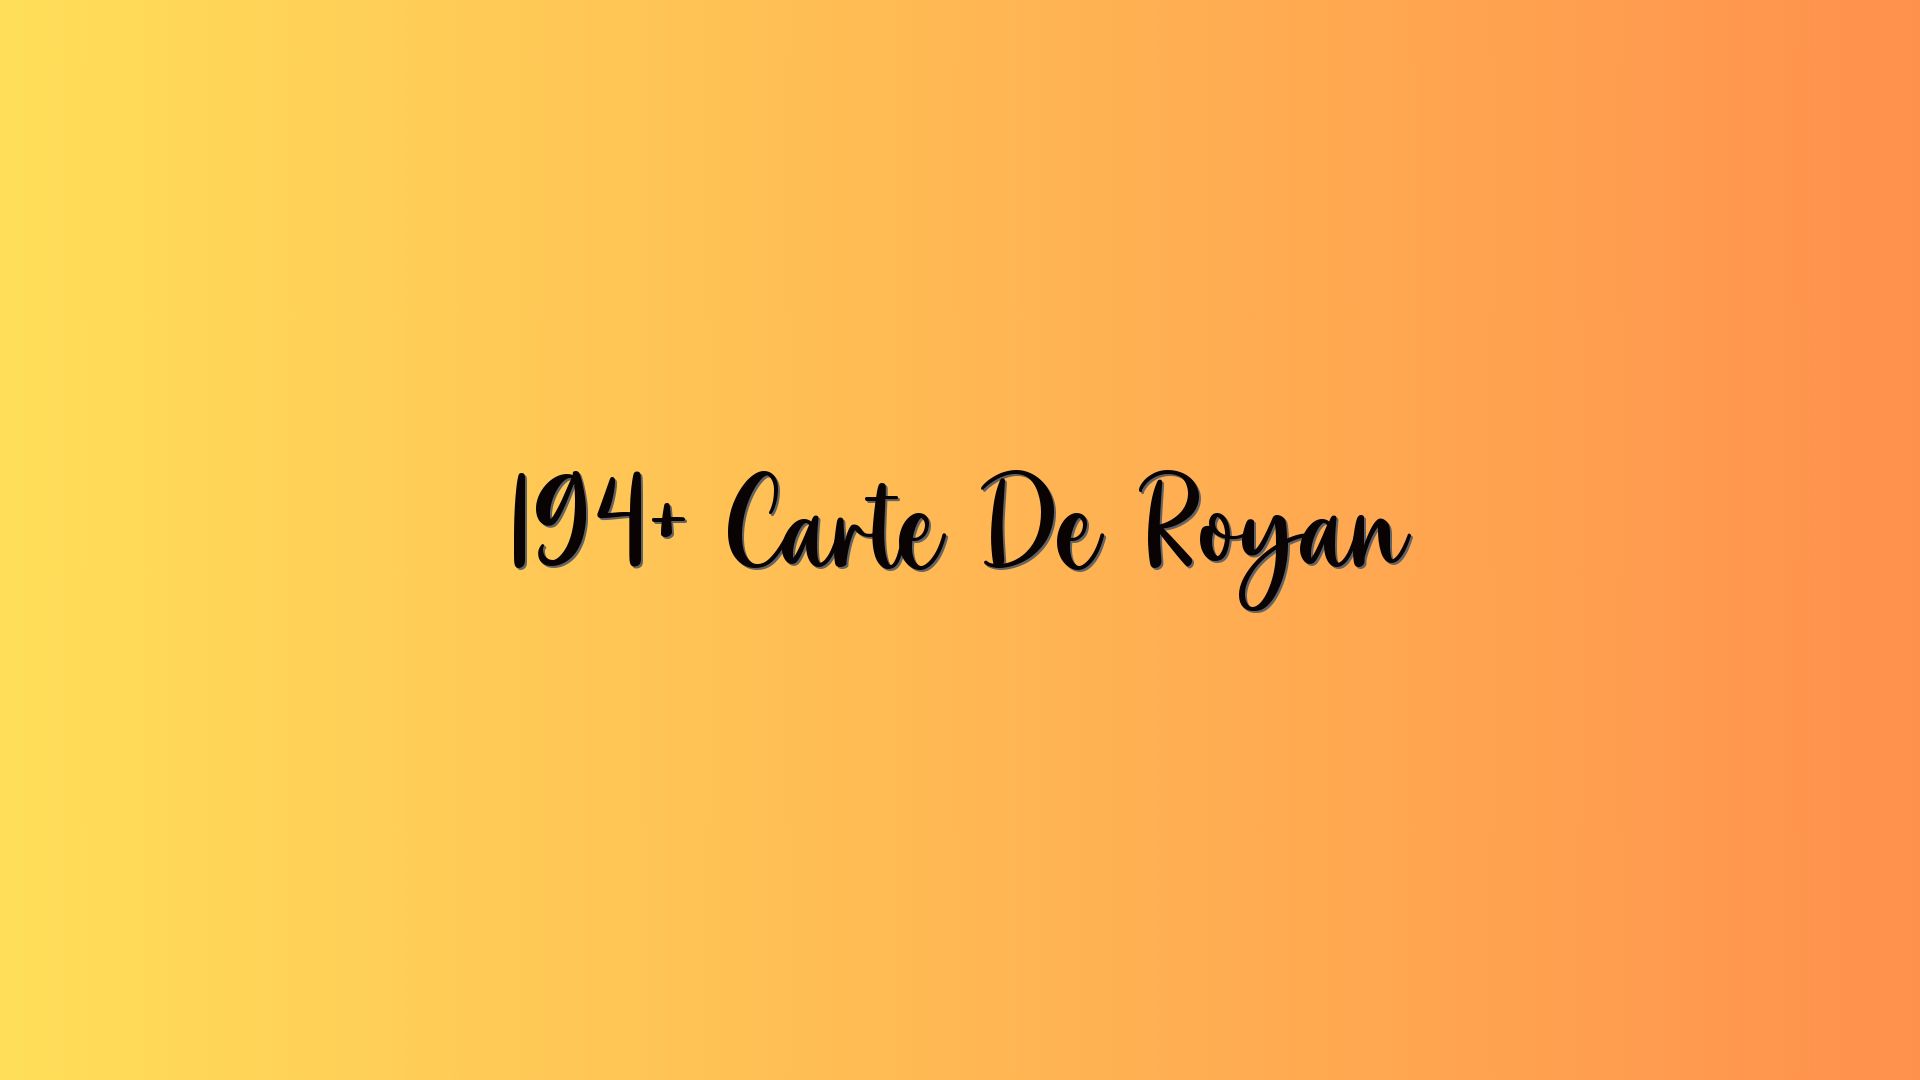 194+ Carte De Royan